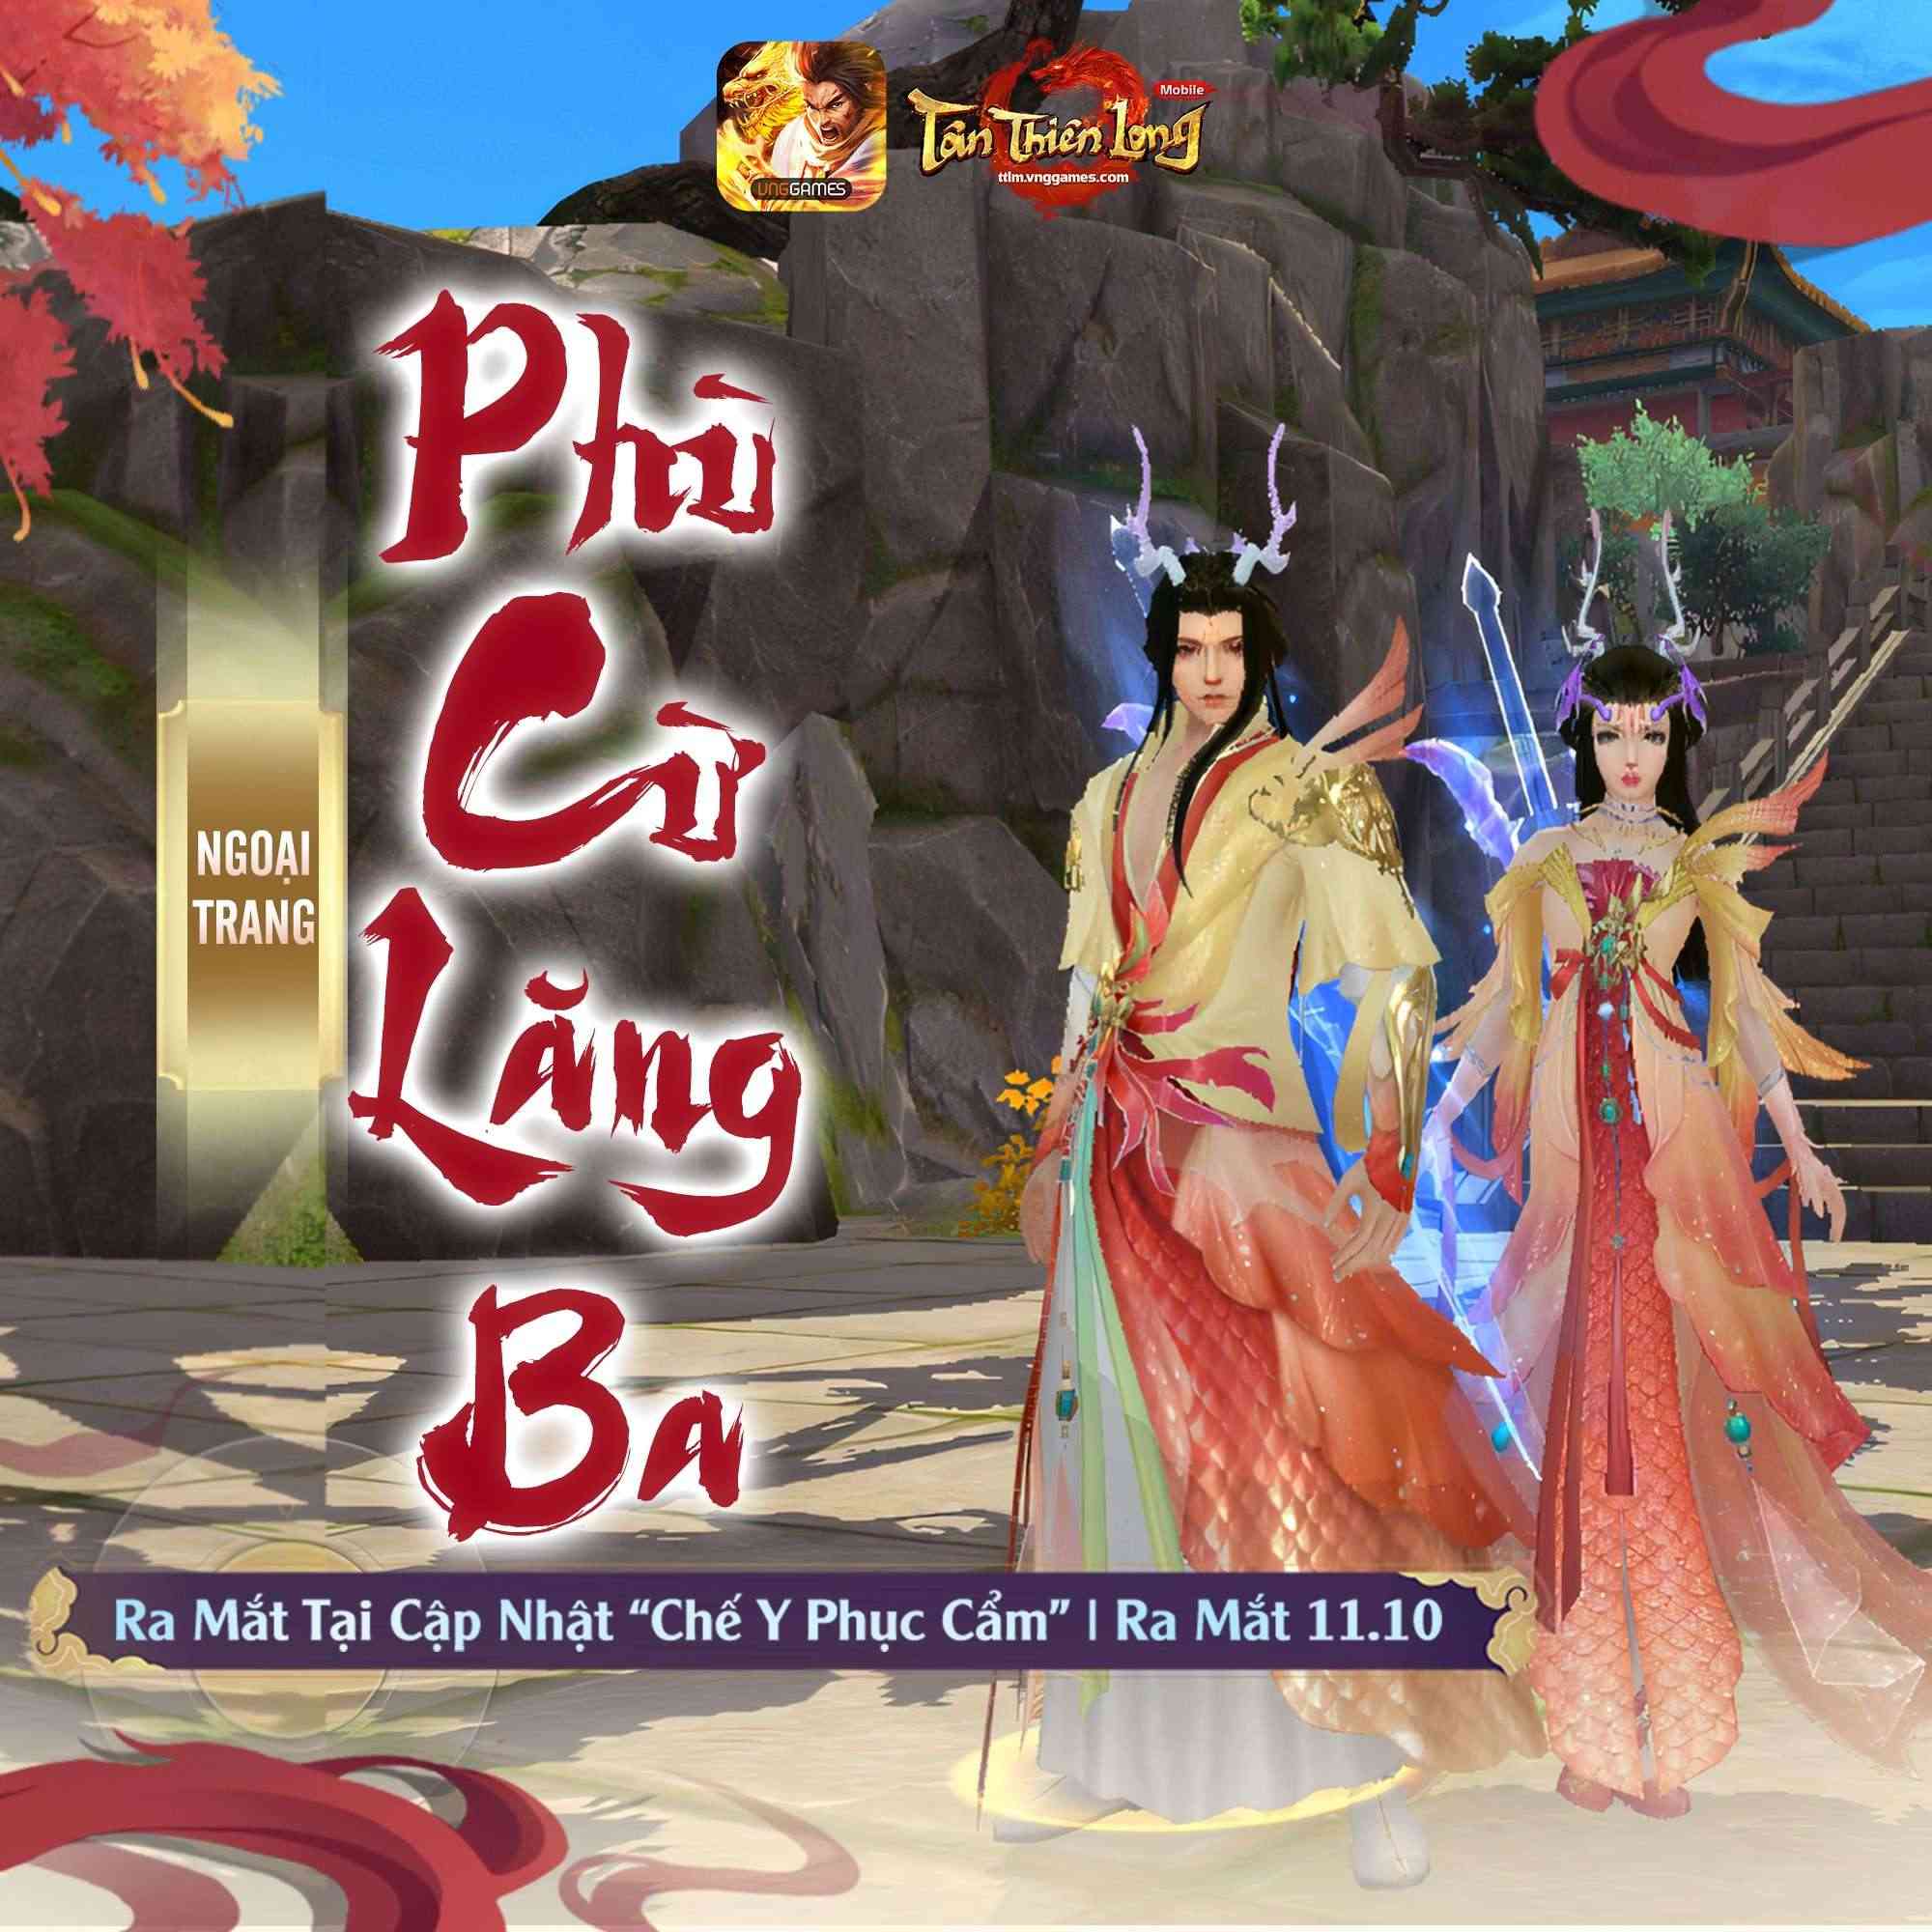 Cập nhật mới Tháng 10 của Tân Thiên Long Mobile – Phiên bản ‘chill’ cho game thủ!